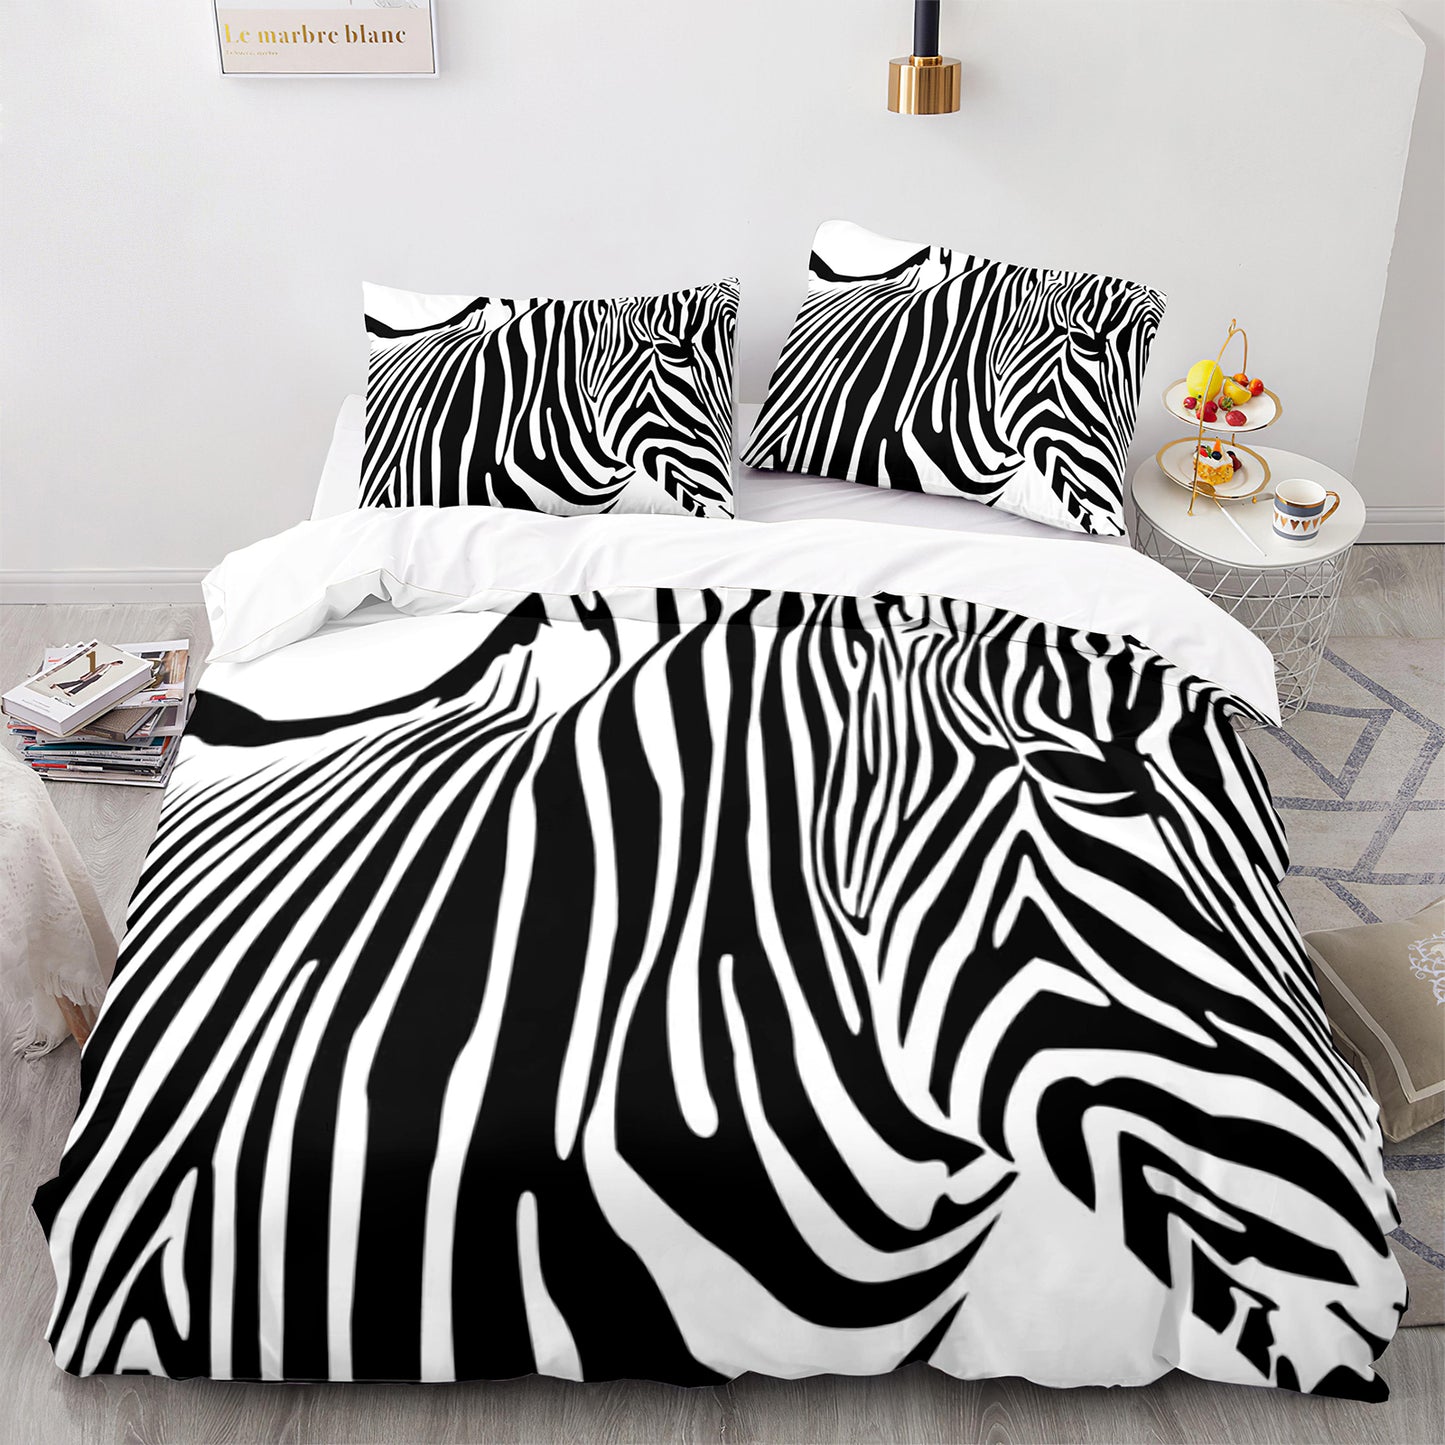 Cutom Bettbezug-Set Muster Chic Bettbezug King Size für Teenager Erwachsene Bettwäsche-Set mit Kissenbezügen M1055